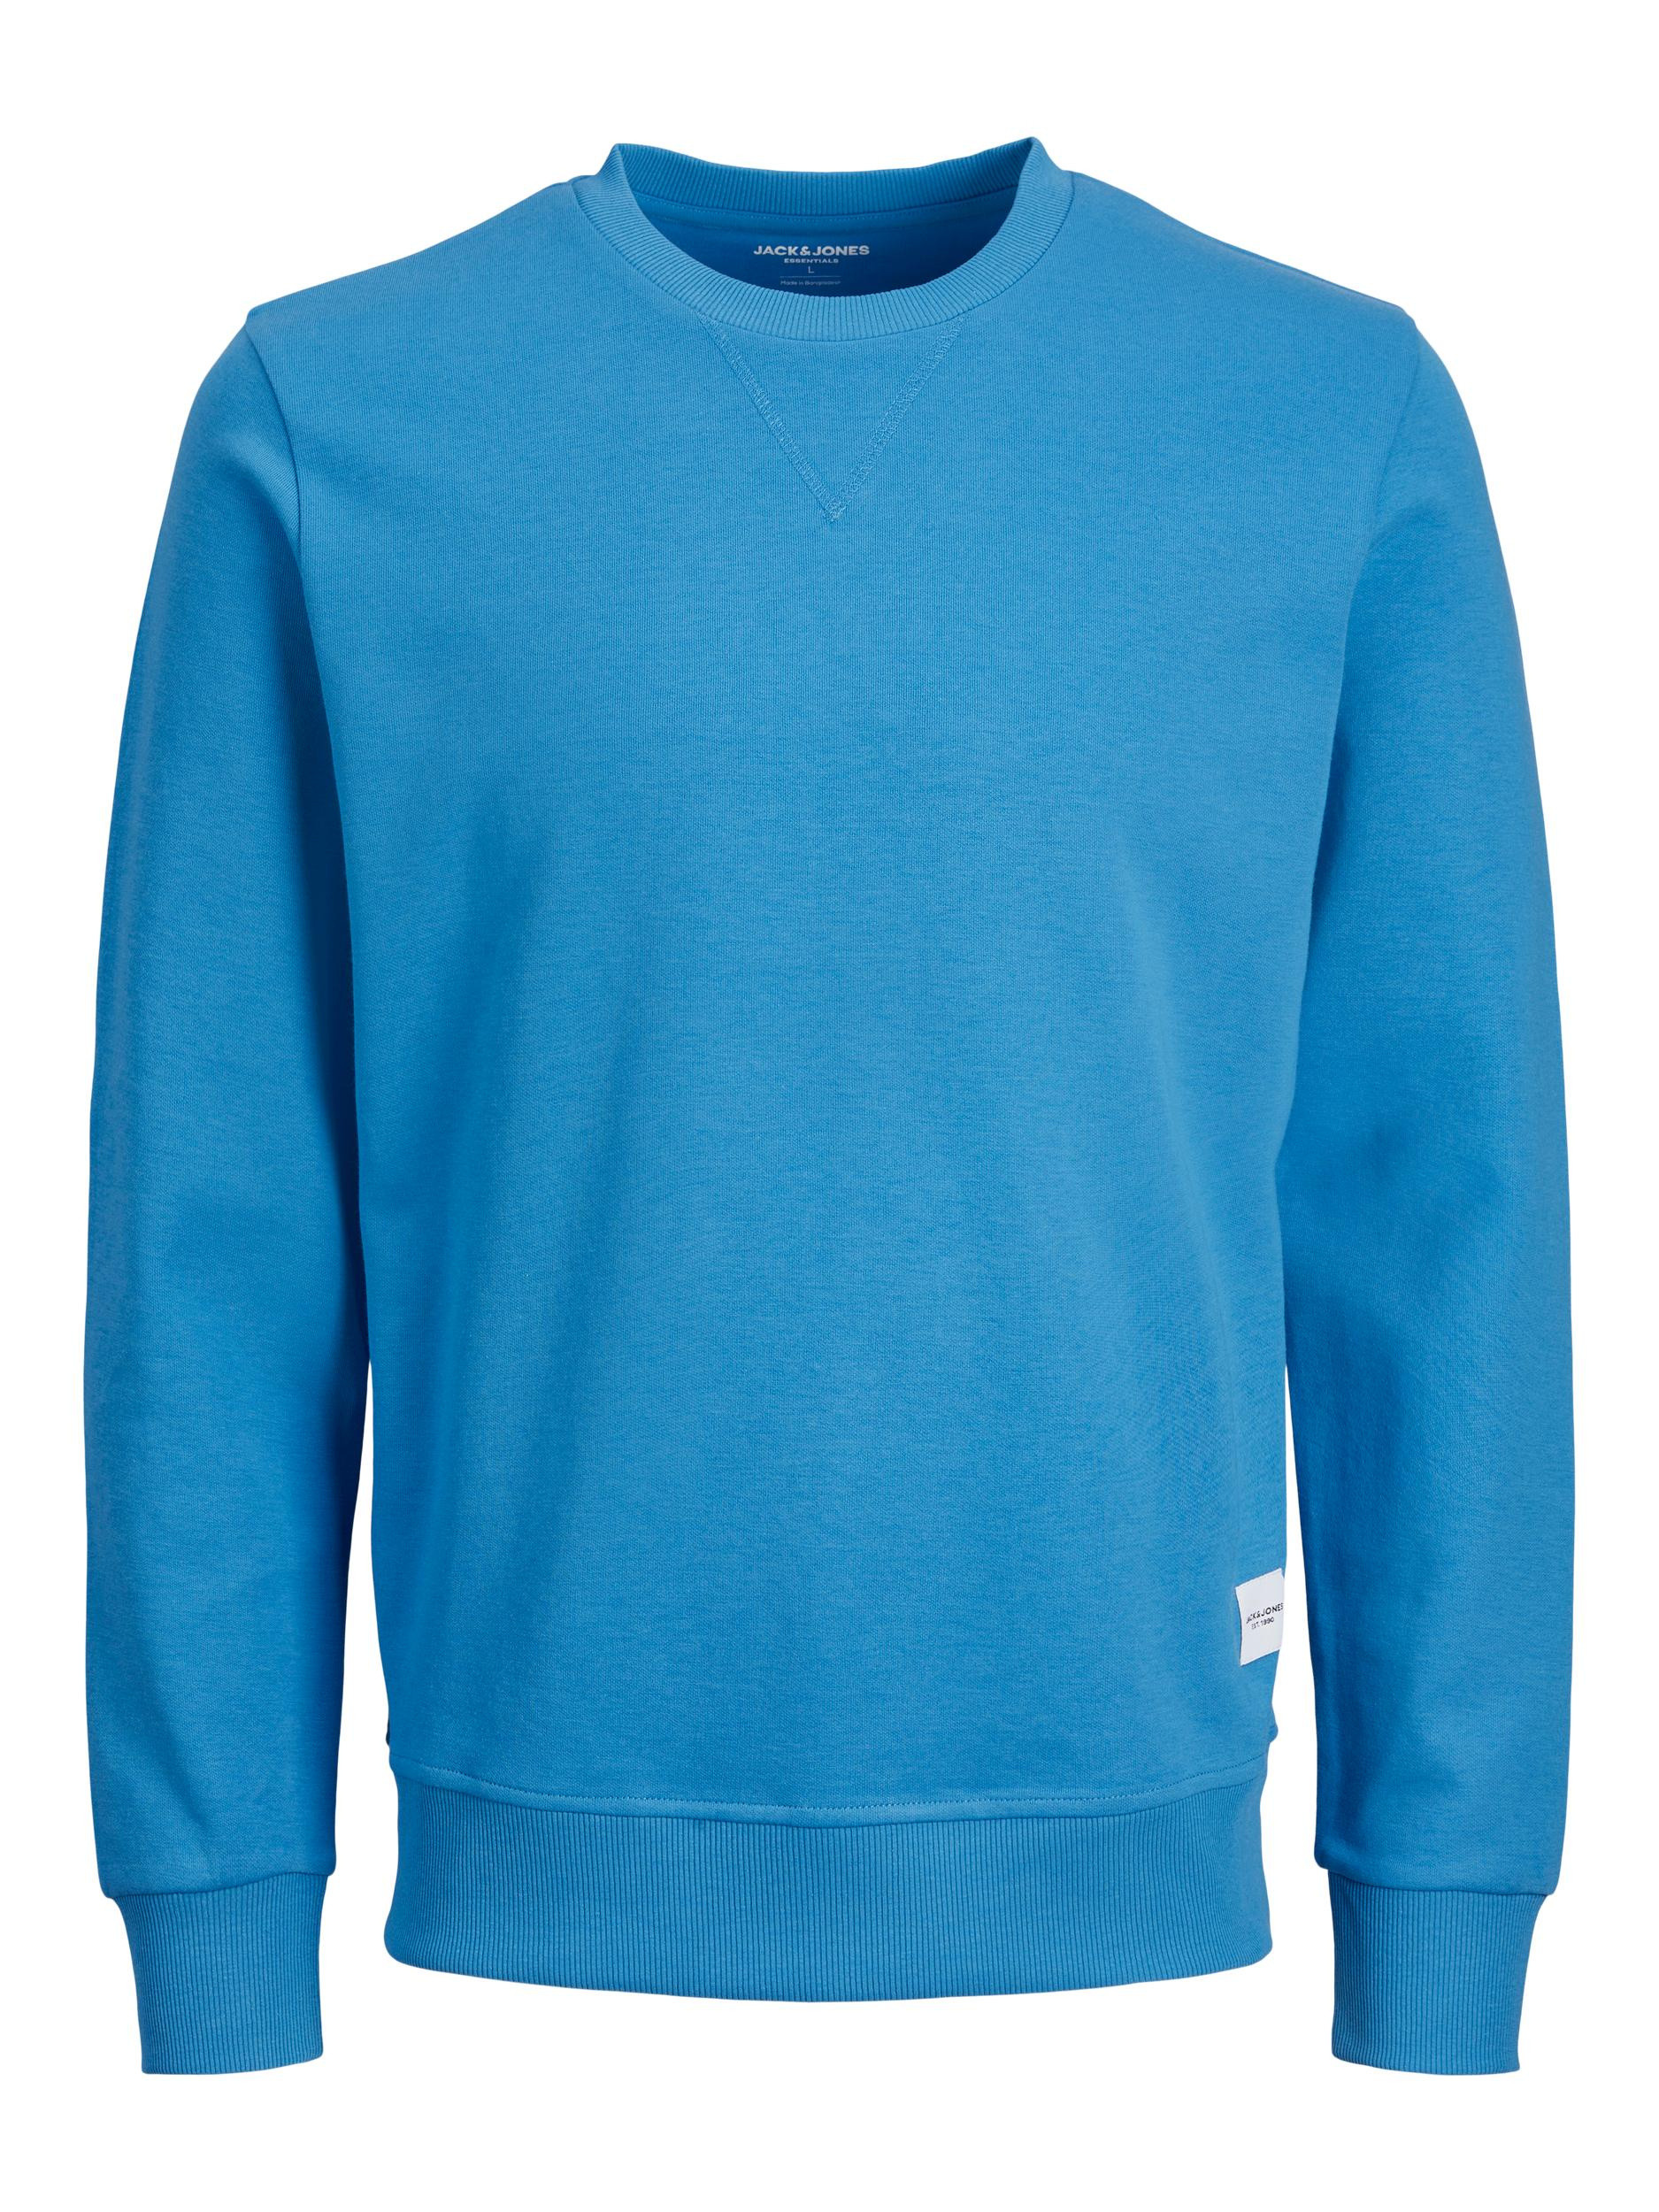 Jack & Jones - Pullover regular fit, Azzurro, large image number 0